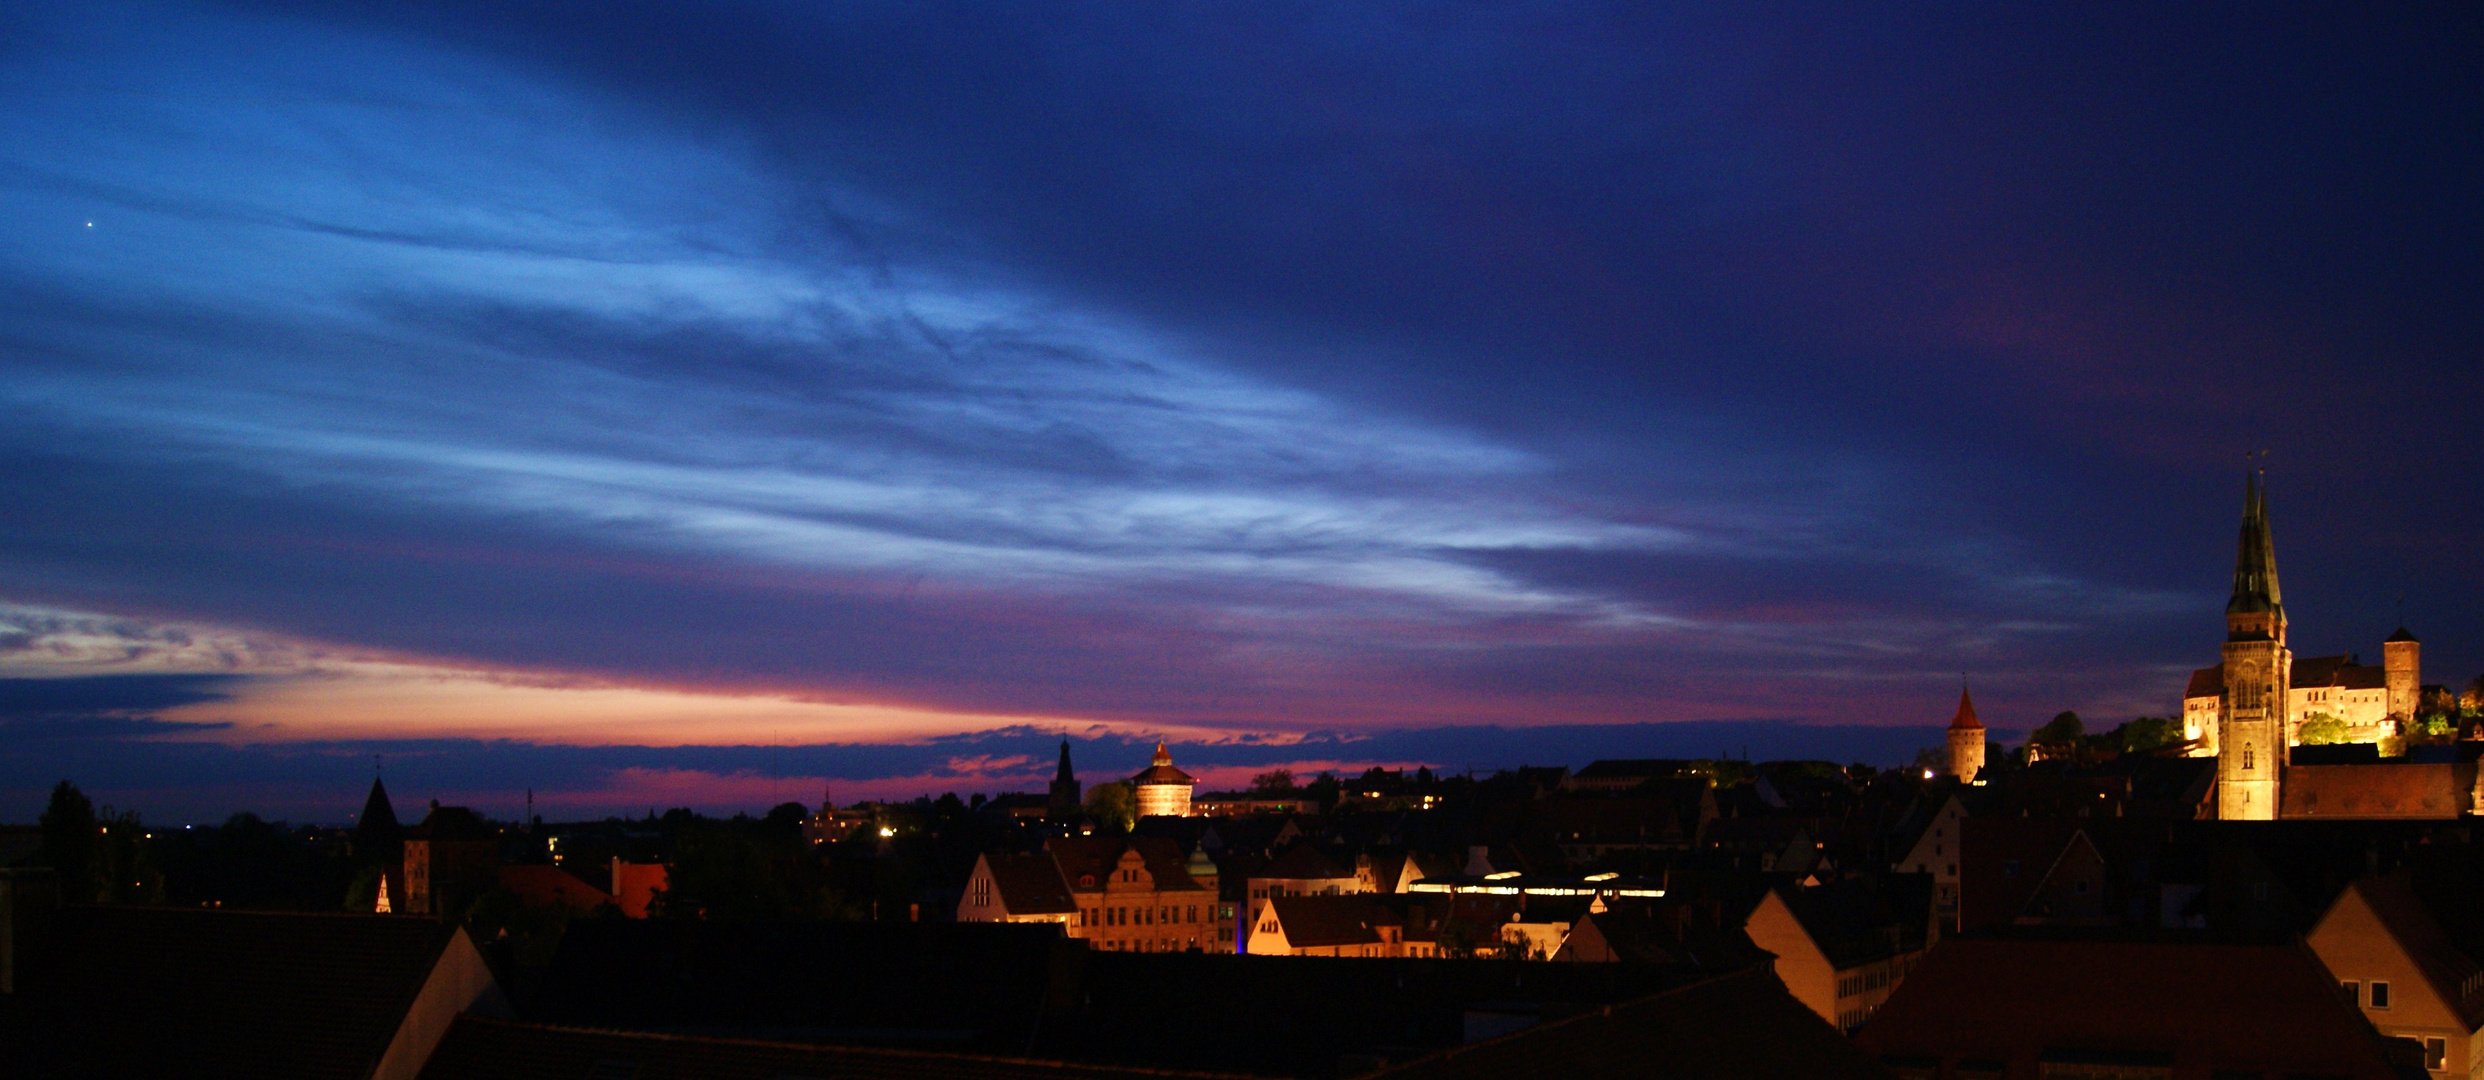 Himmel über Nürnberg mit Silhouette